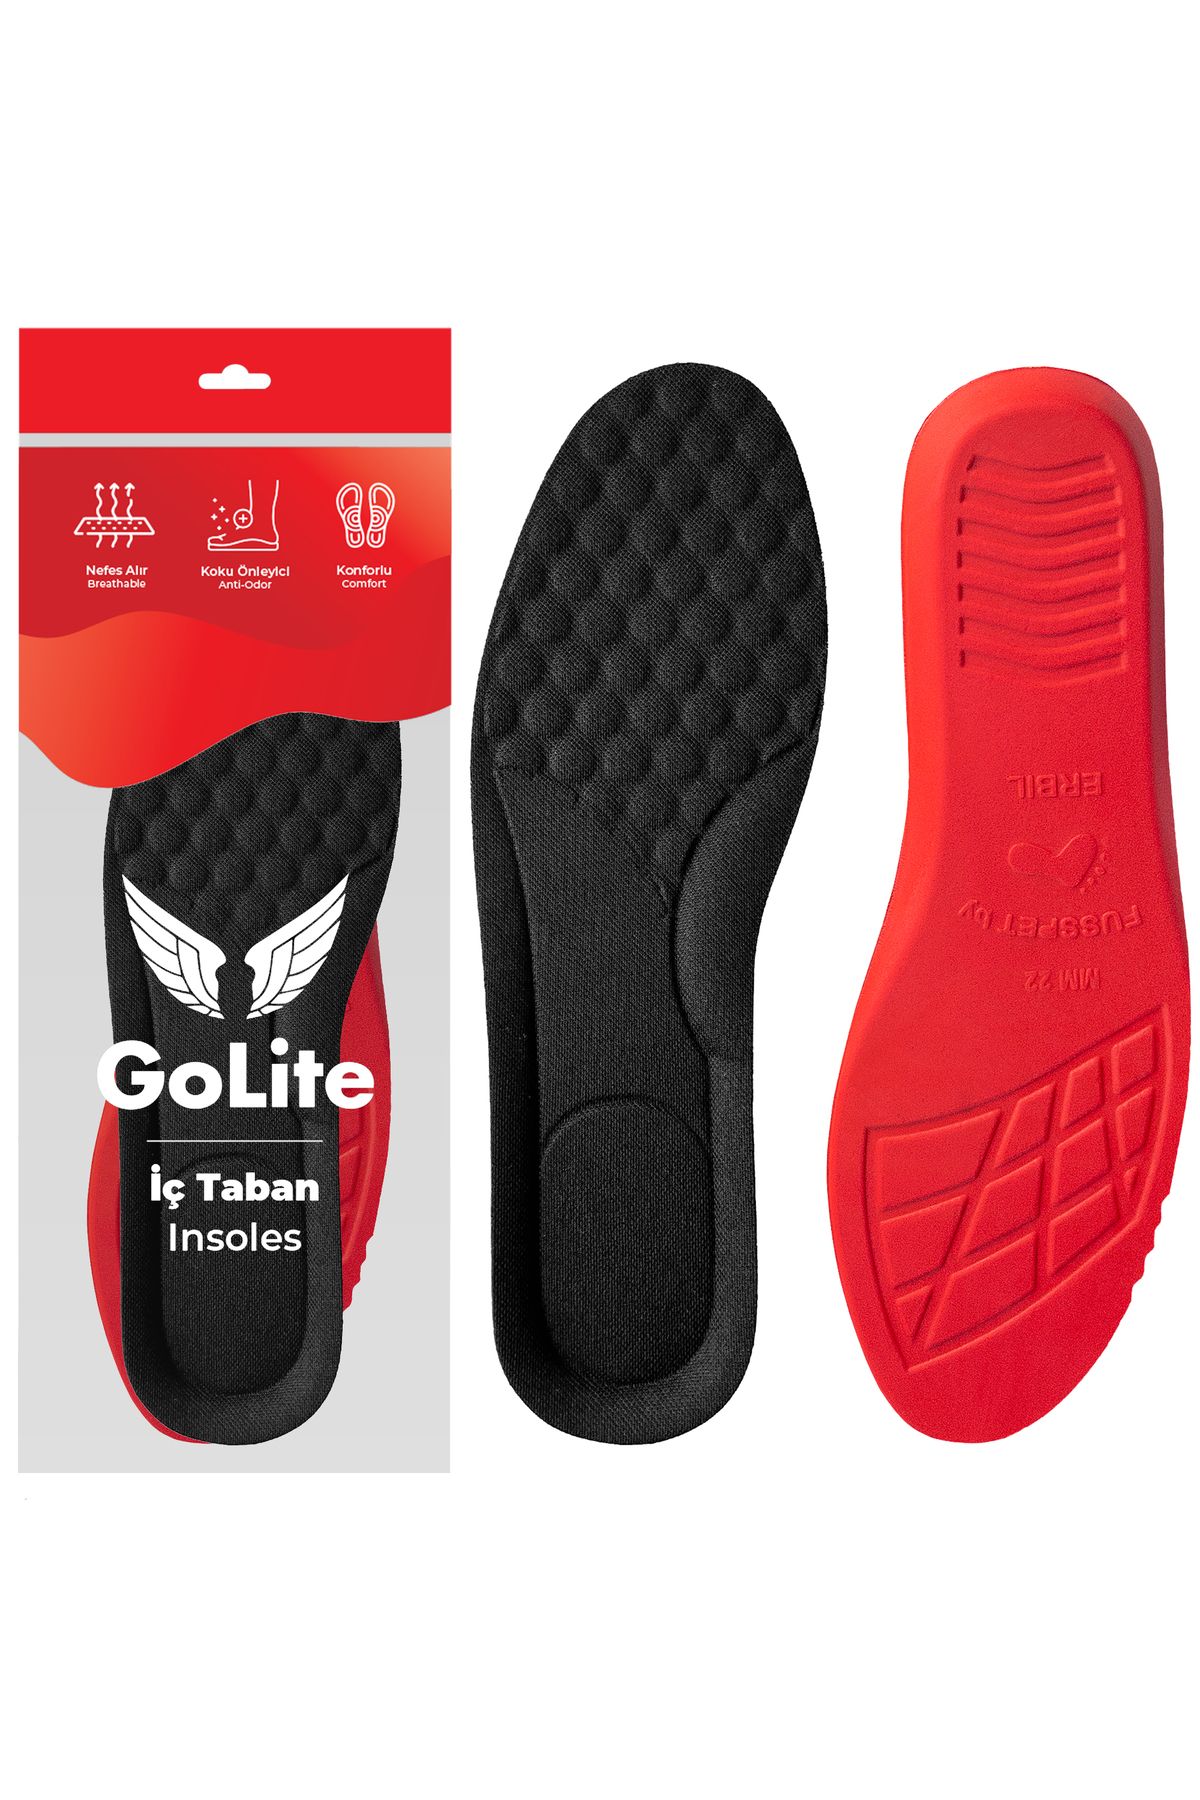 GoLite Konforlu Rahat Ayakkabı Tabanlığı, Yumuşak Masaj Etkili Ortopedik Tabanlık Insole - P22 Siyah